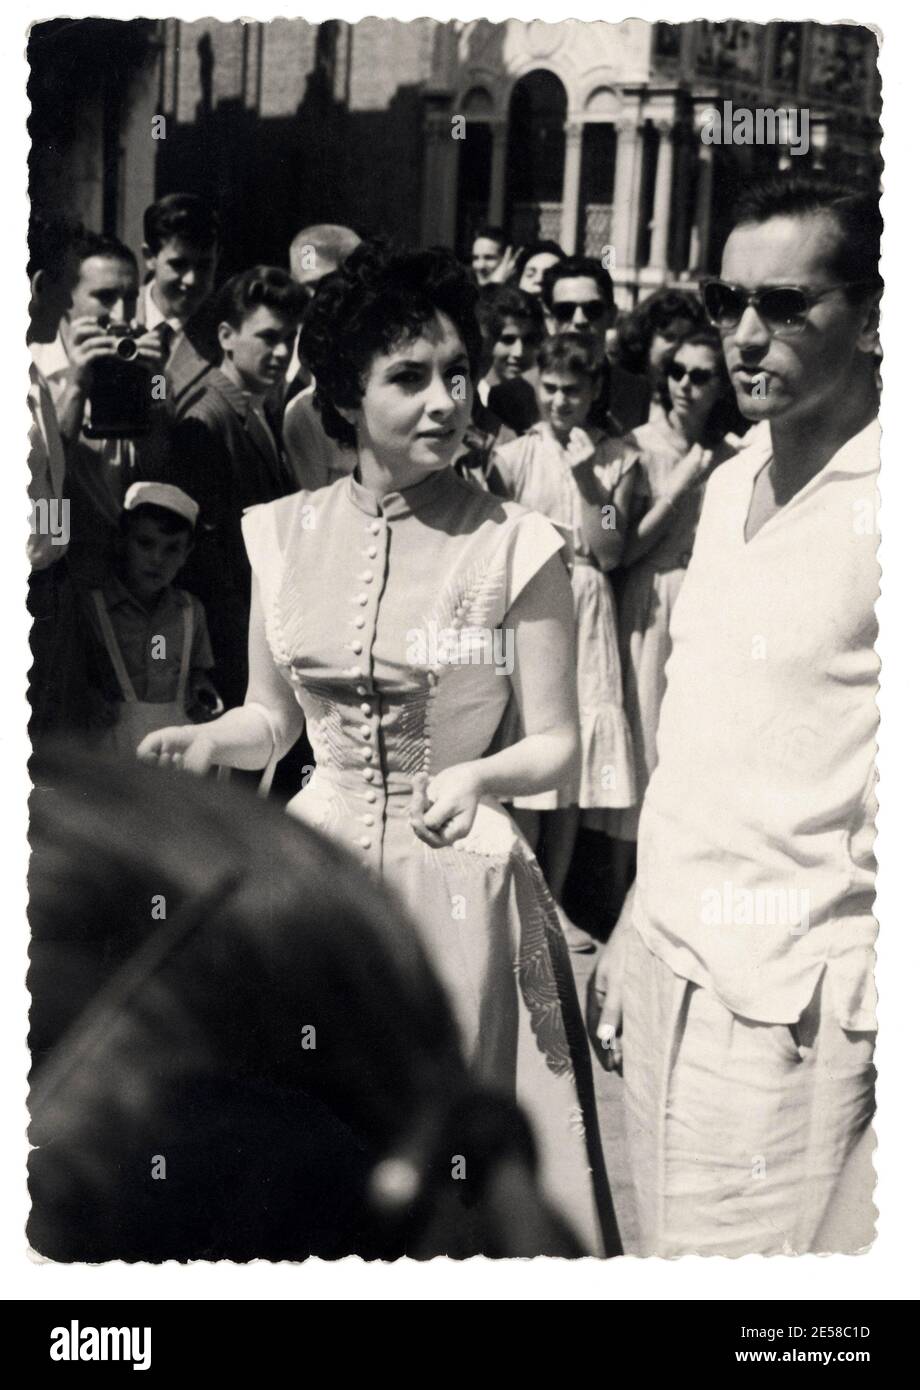 1954 , september , Venice , ITALY : The celebrated movie actress  GINA LOLLOBRIGIDA with housband Milko Scofic in Piazza San Marco - CINEMA - candid still - portrait - ritratto - paparazzi - paparazzo - sunglasses - occhiali da sole ----  Archivio GBB Stock Photo